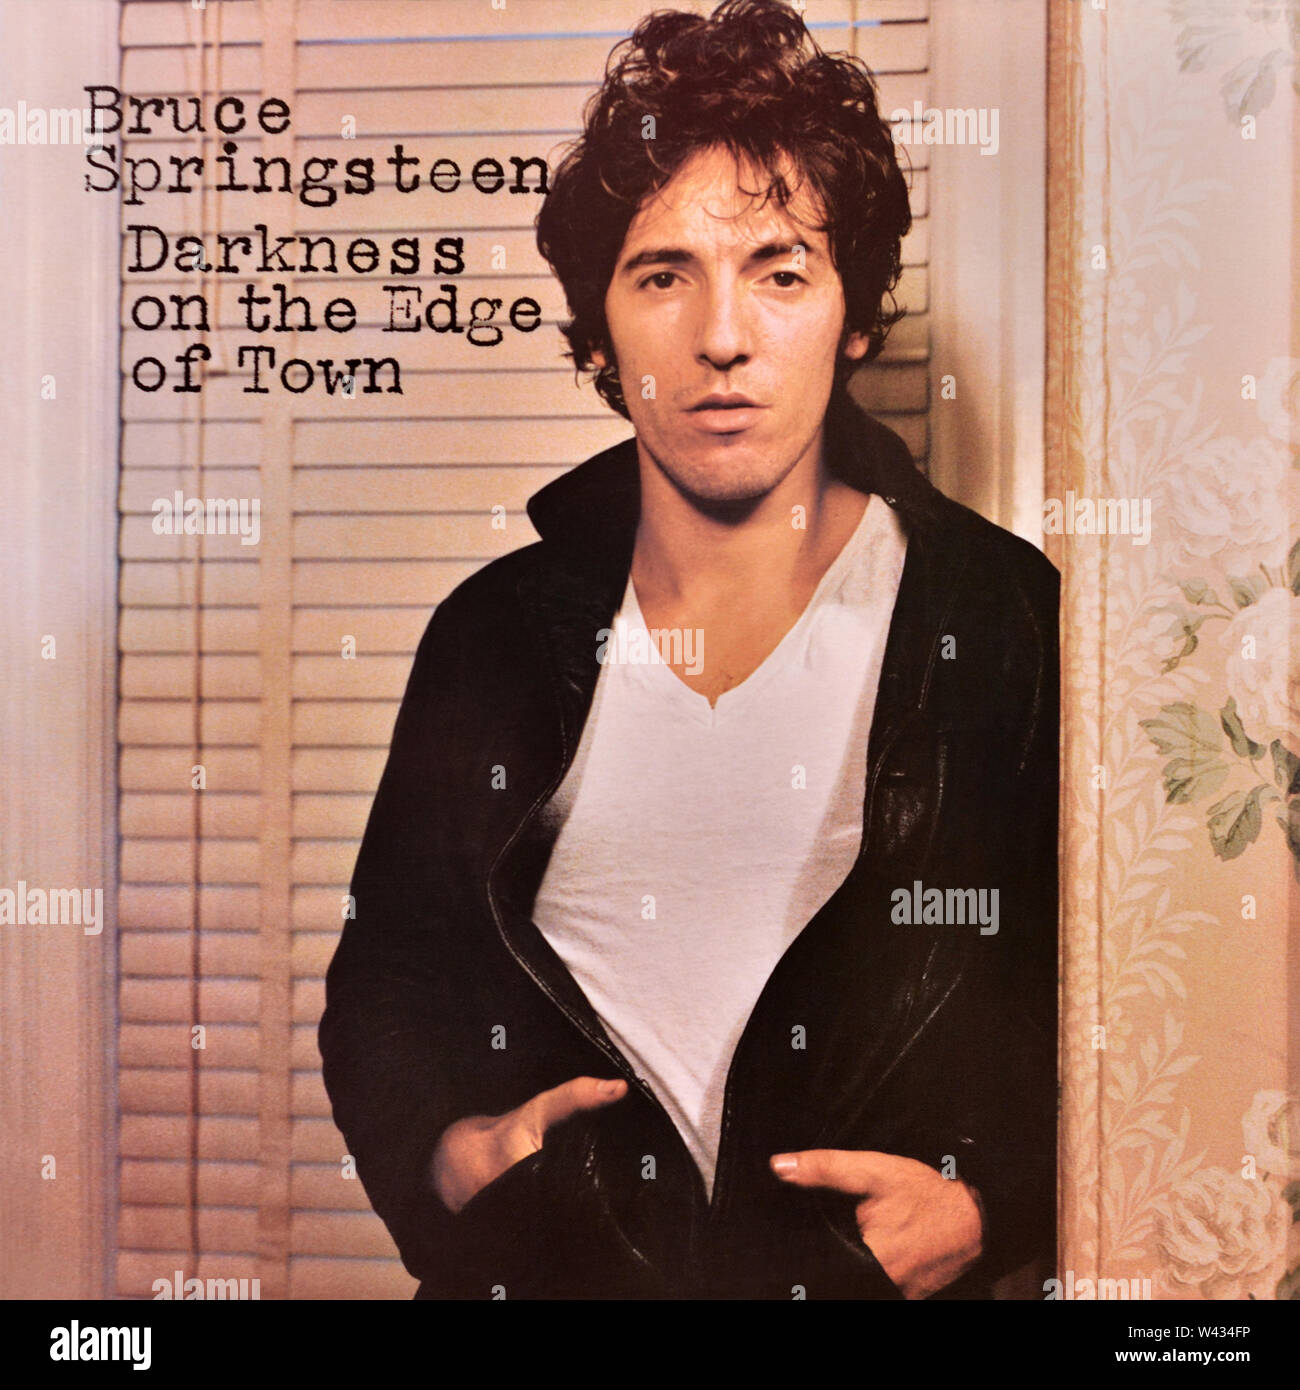 Bruce Springsteen - pochette originale de l'album en vinyle - Darkness on the Edge of Town - 1978 Banque D'Images